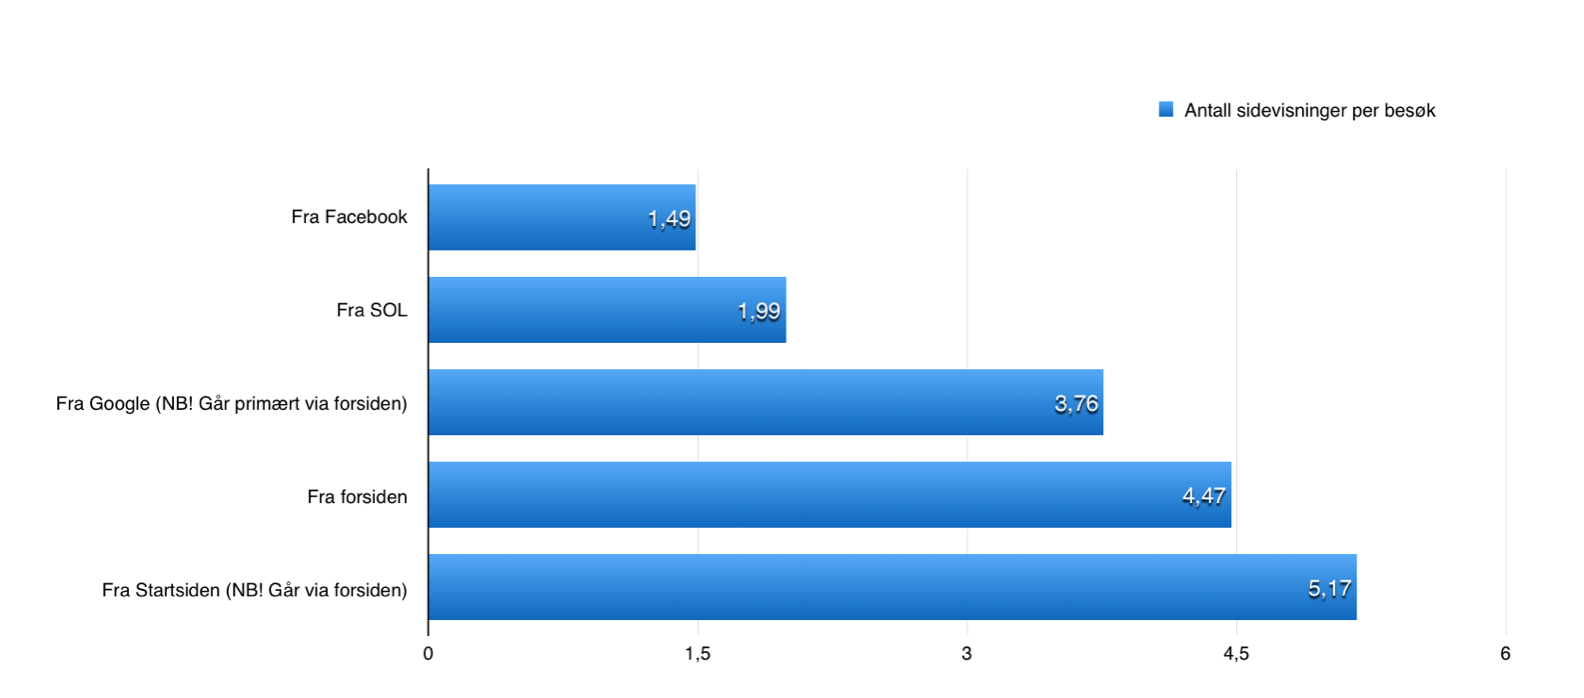 Antall sidevisninger per besøk fordelt på trafikkilder, Amedias aviser, gjennomsnittstall september-desember 2014 (kilde: Amedia)